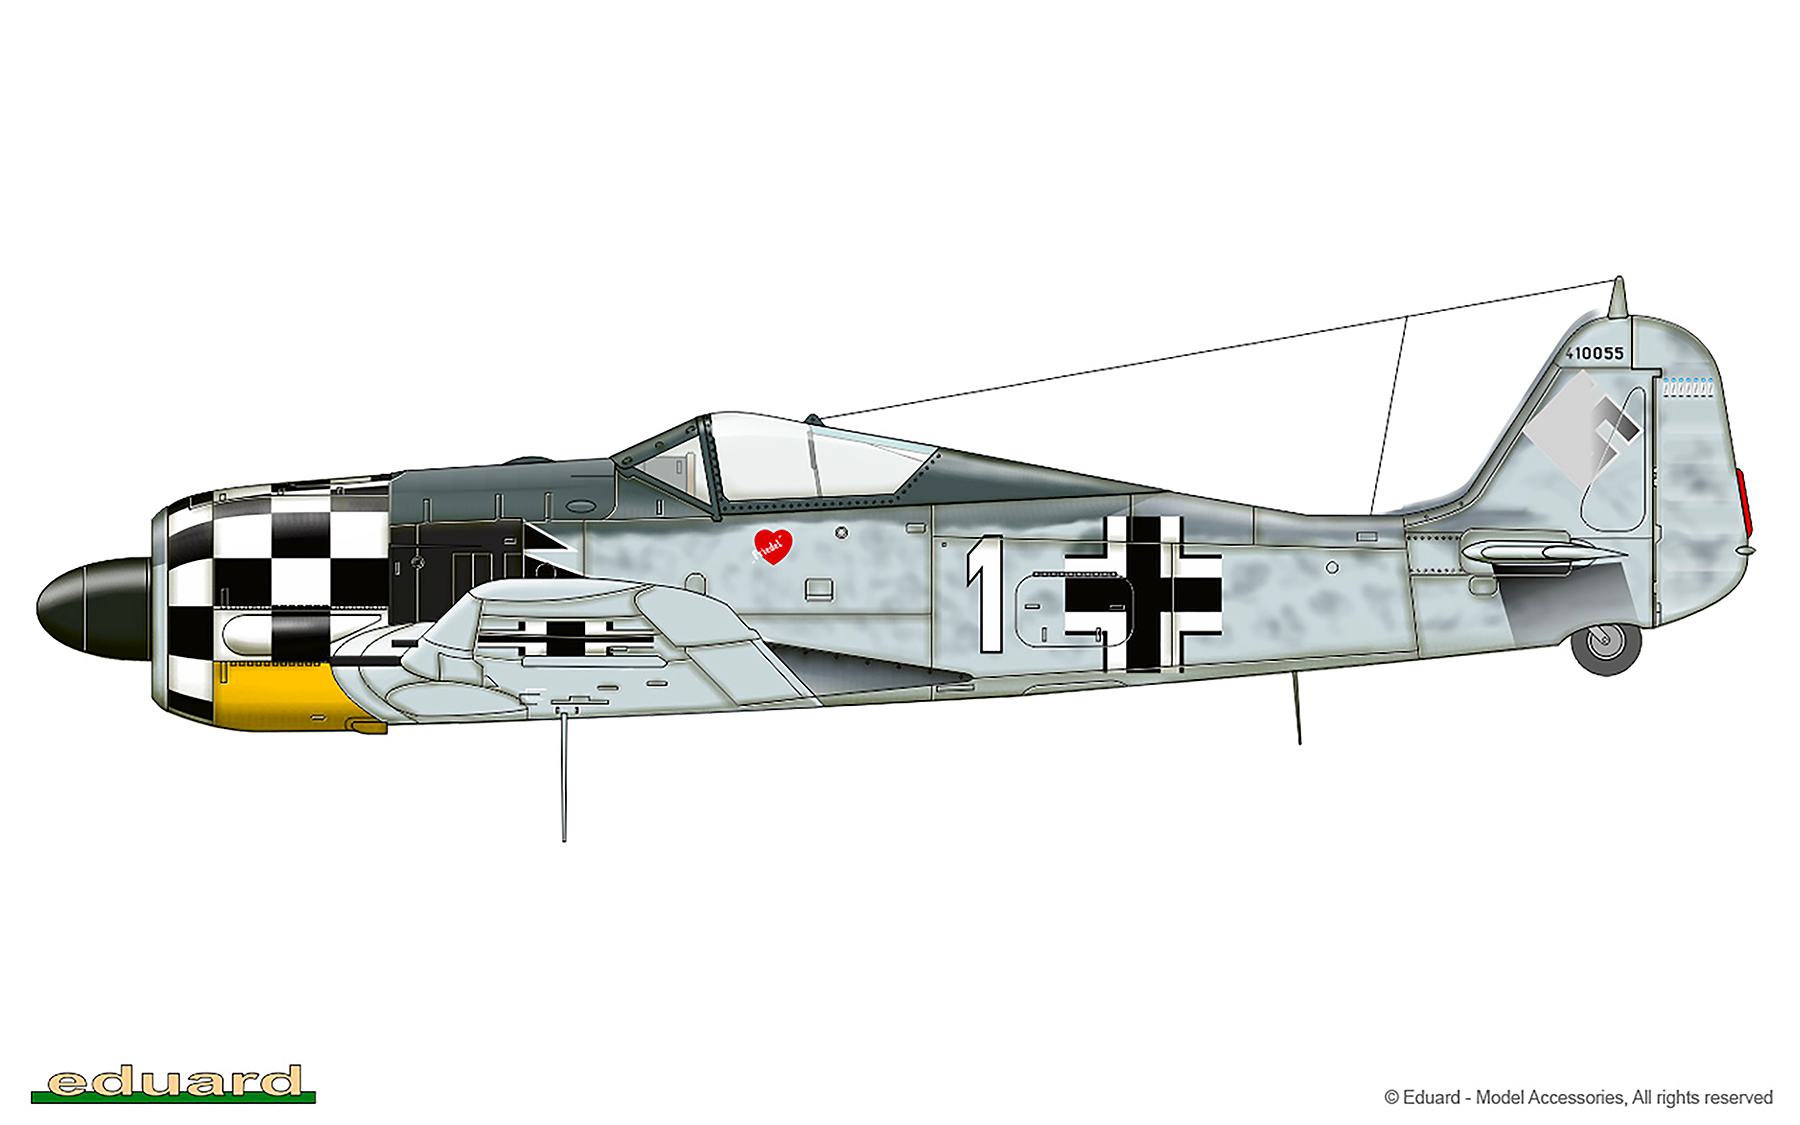 Focke Wulf Fw 190A5 1.JG1 White 1 Bernhard Kunze WNr 410055 Deelen Netherlands Oct 1943 0A